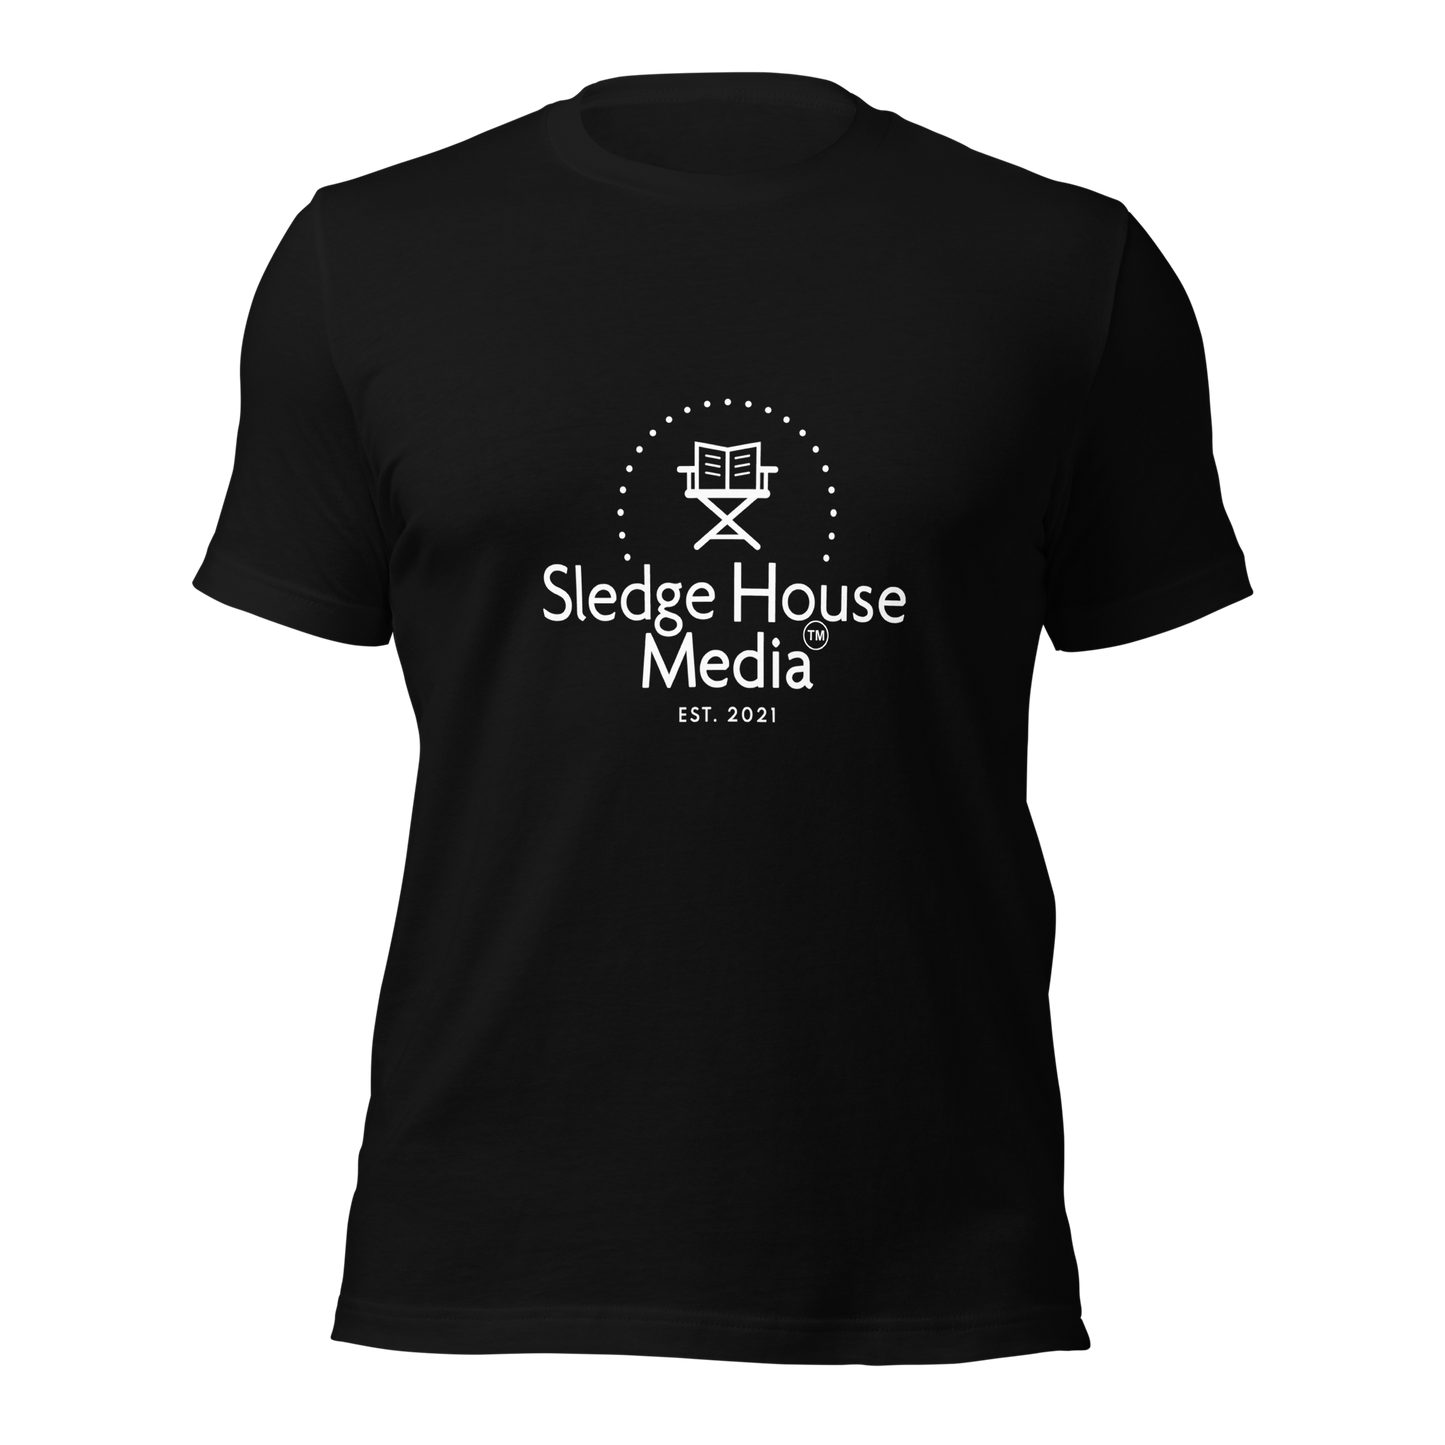 Camiseta unisex "The OG" Sledge House Media